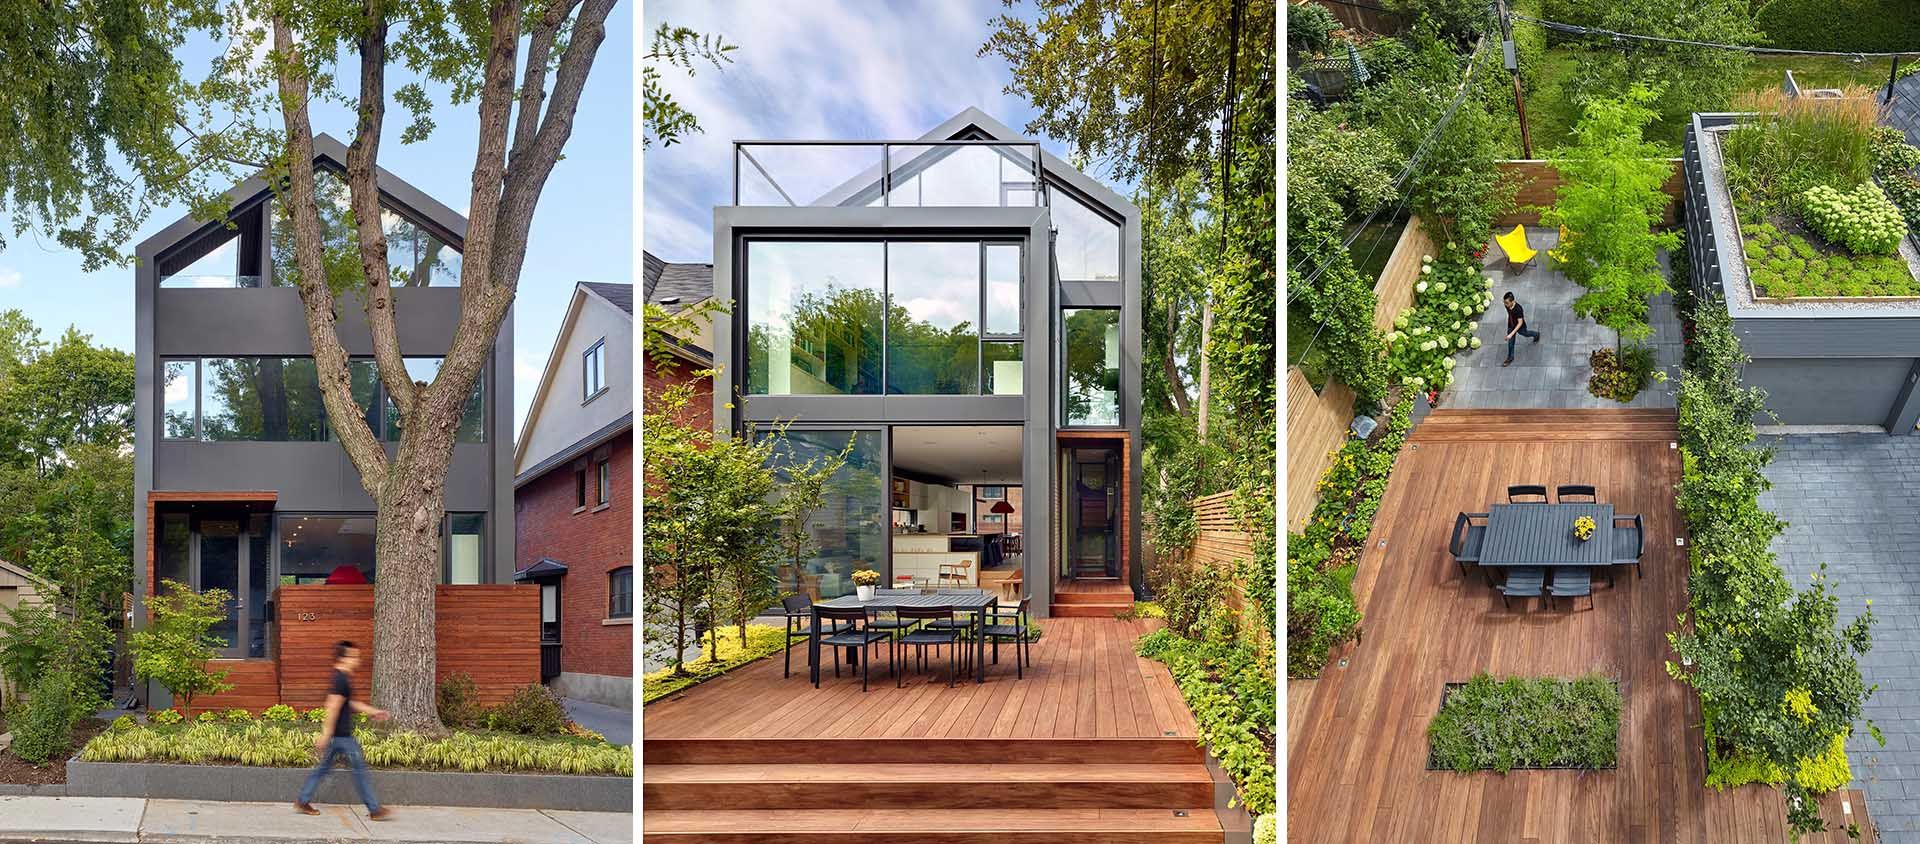 Стеклянные стены и травяная крыша: какие особенности скрывает невероятная вилла в Торонто - Дизайн 24